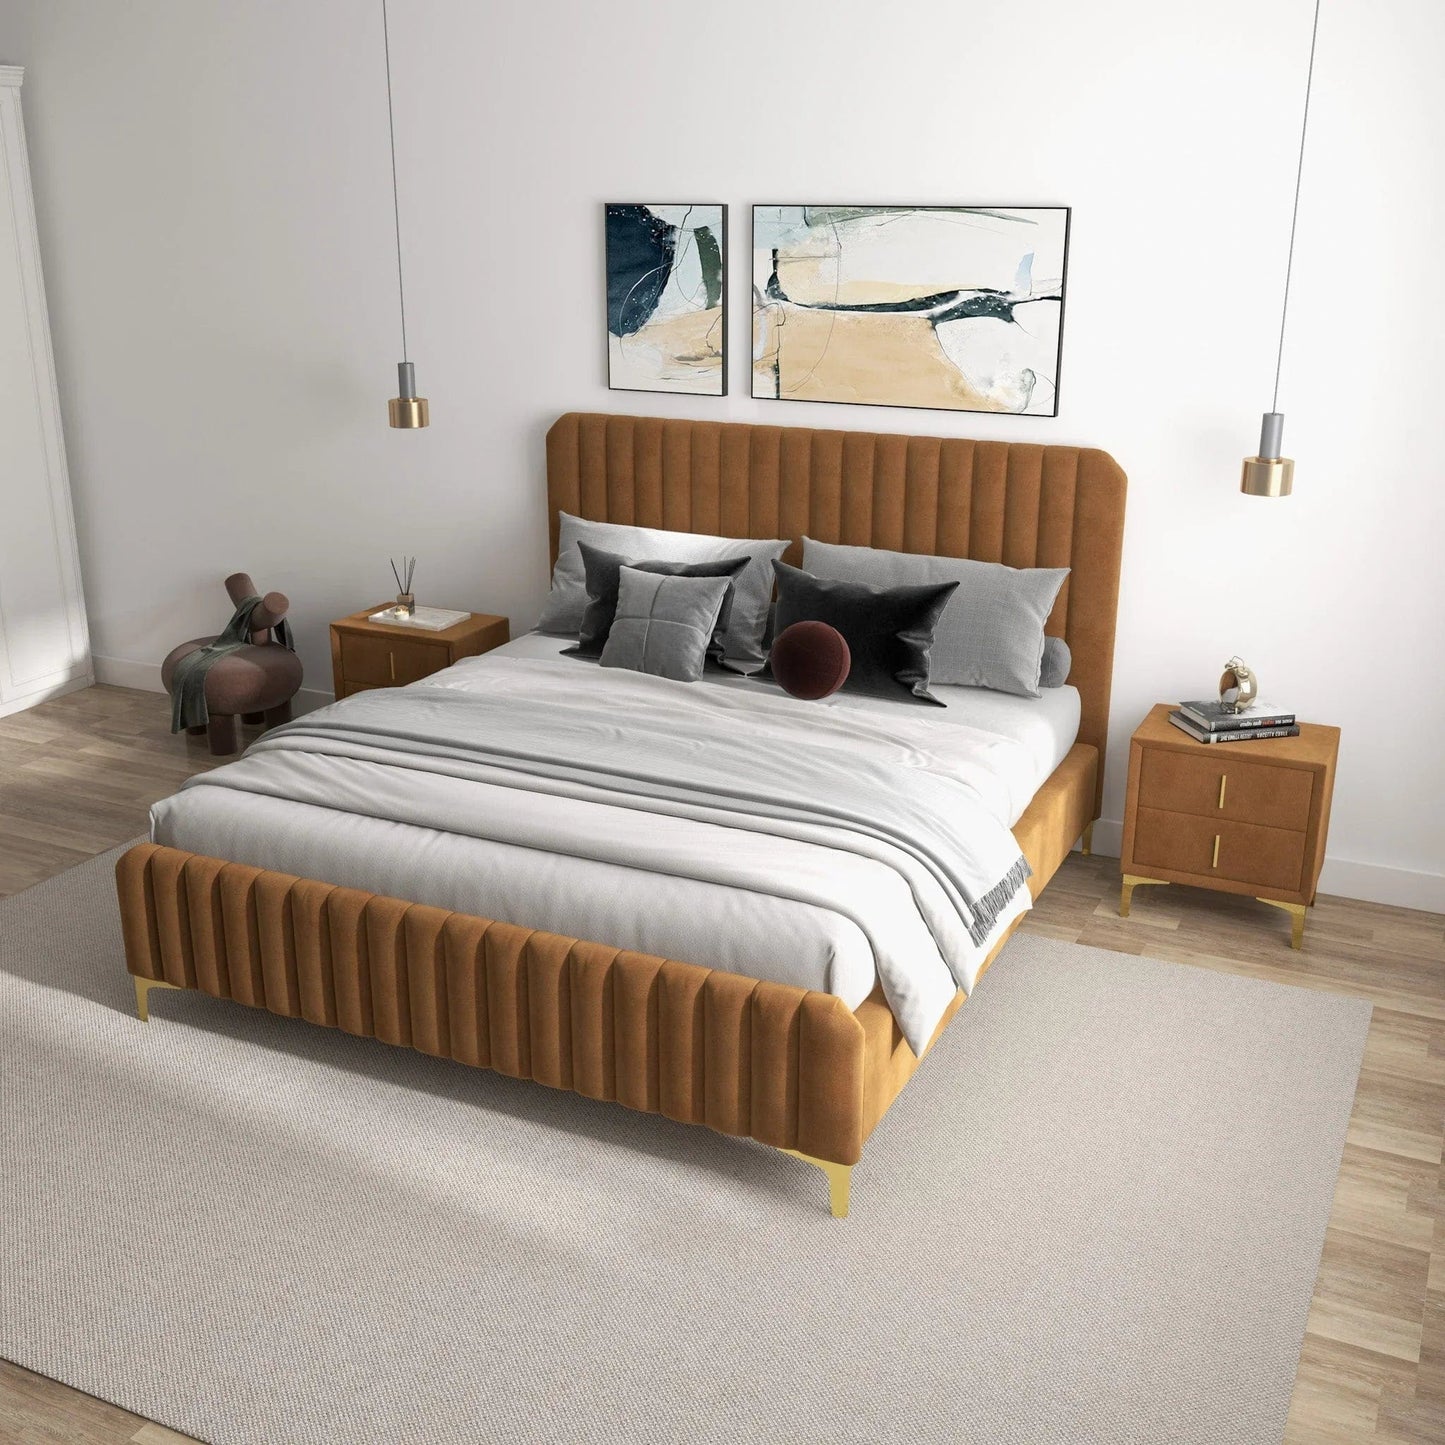 Ashcroft Furniture Co Bed Bethany Velvet Upholstered Platform Bed